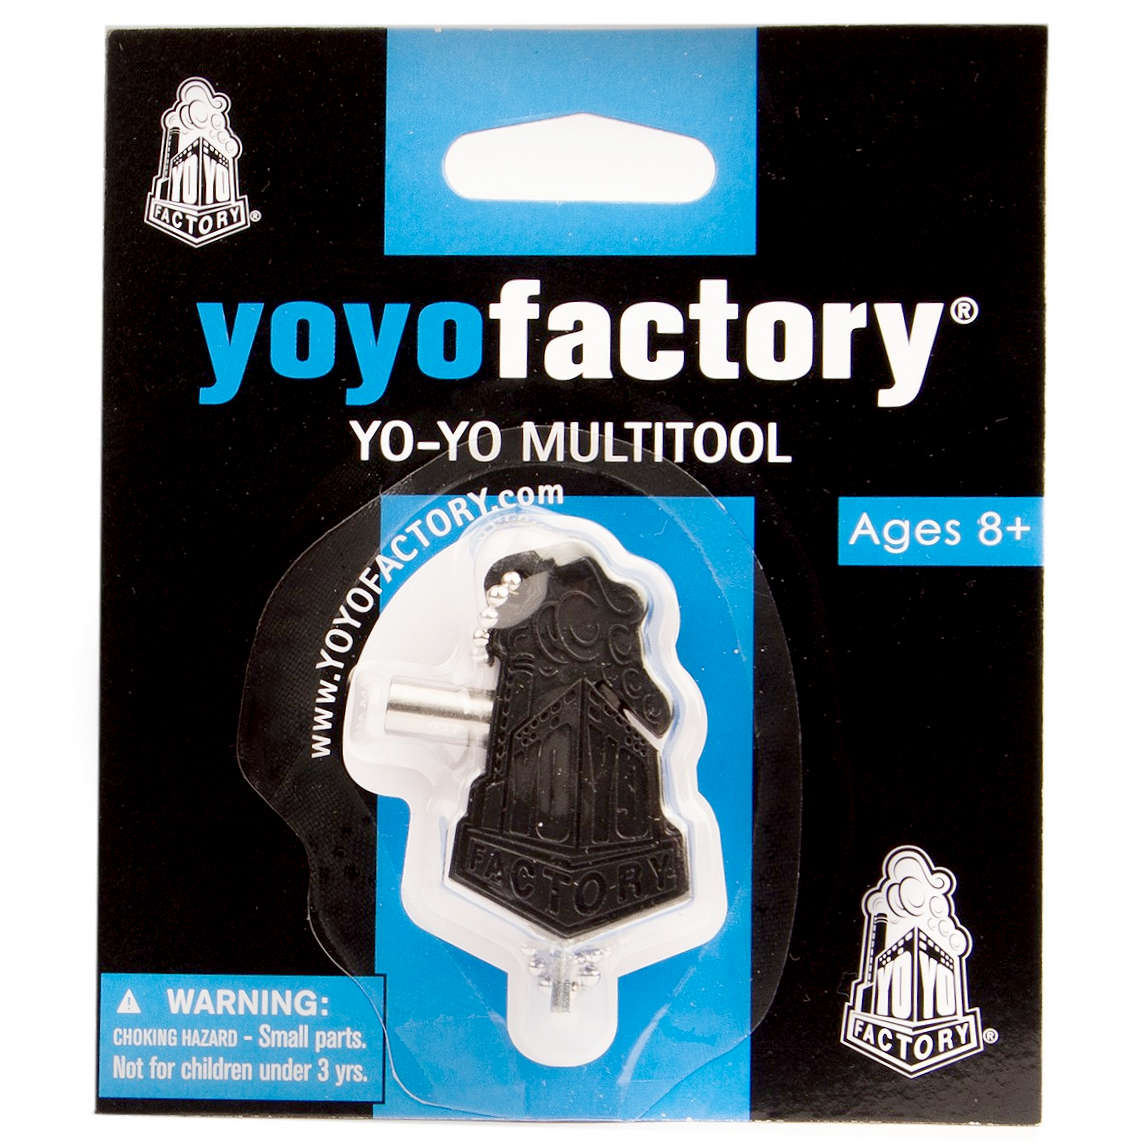 YoYo Multi tool in the box